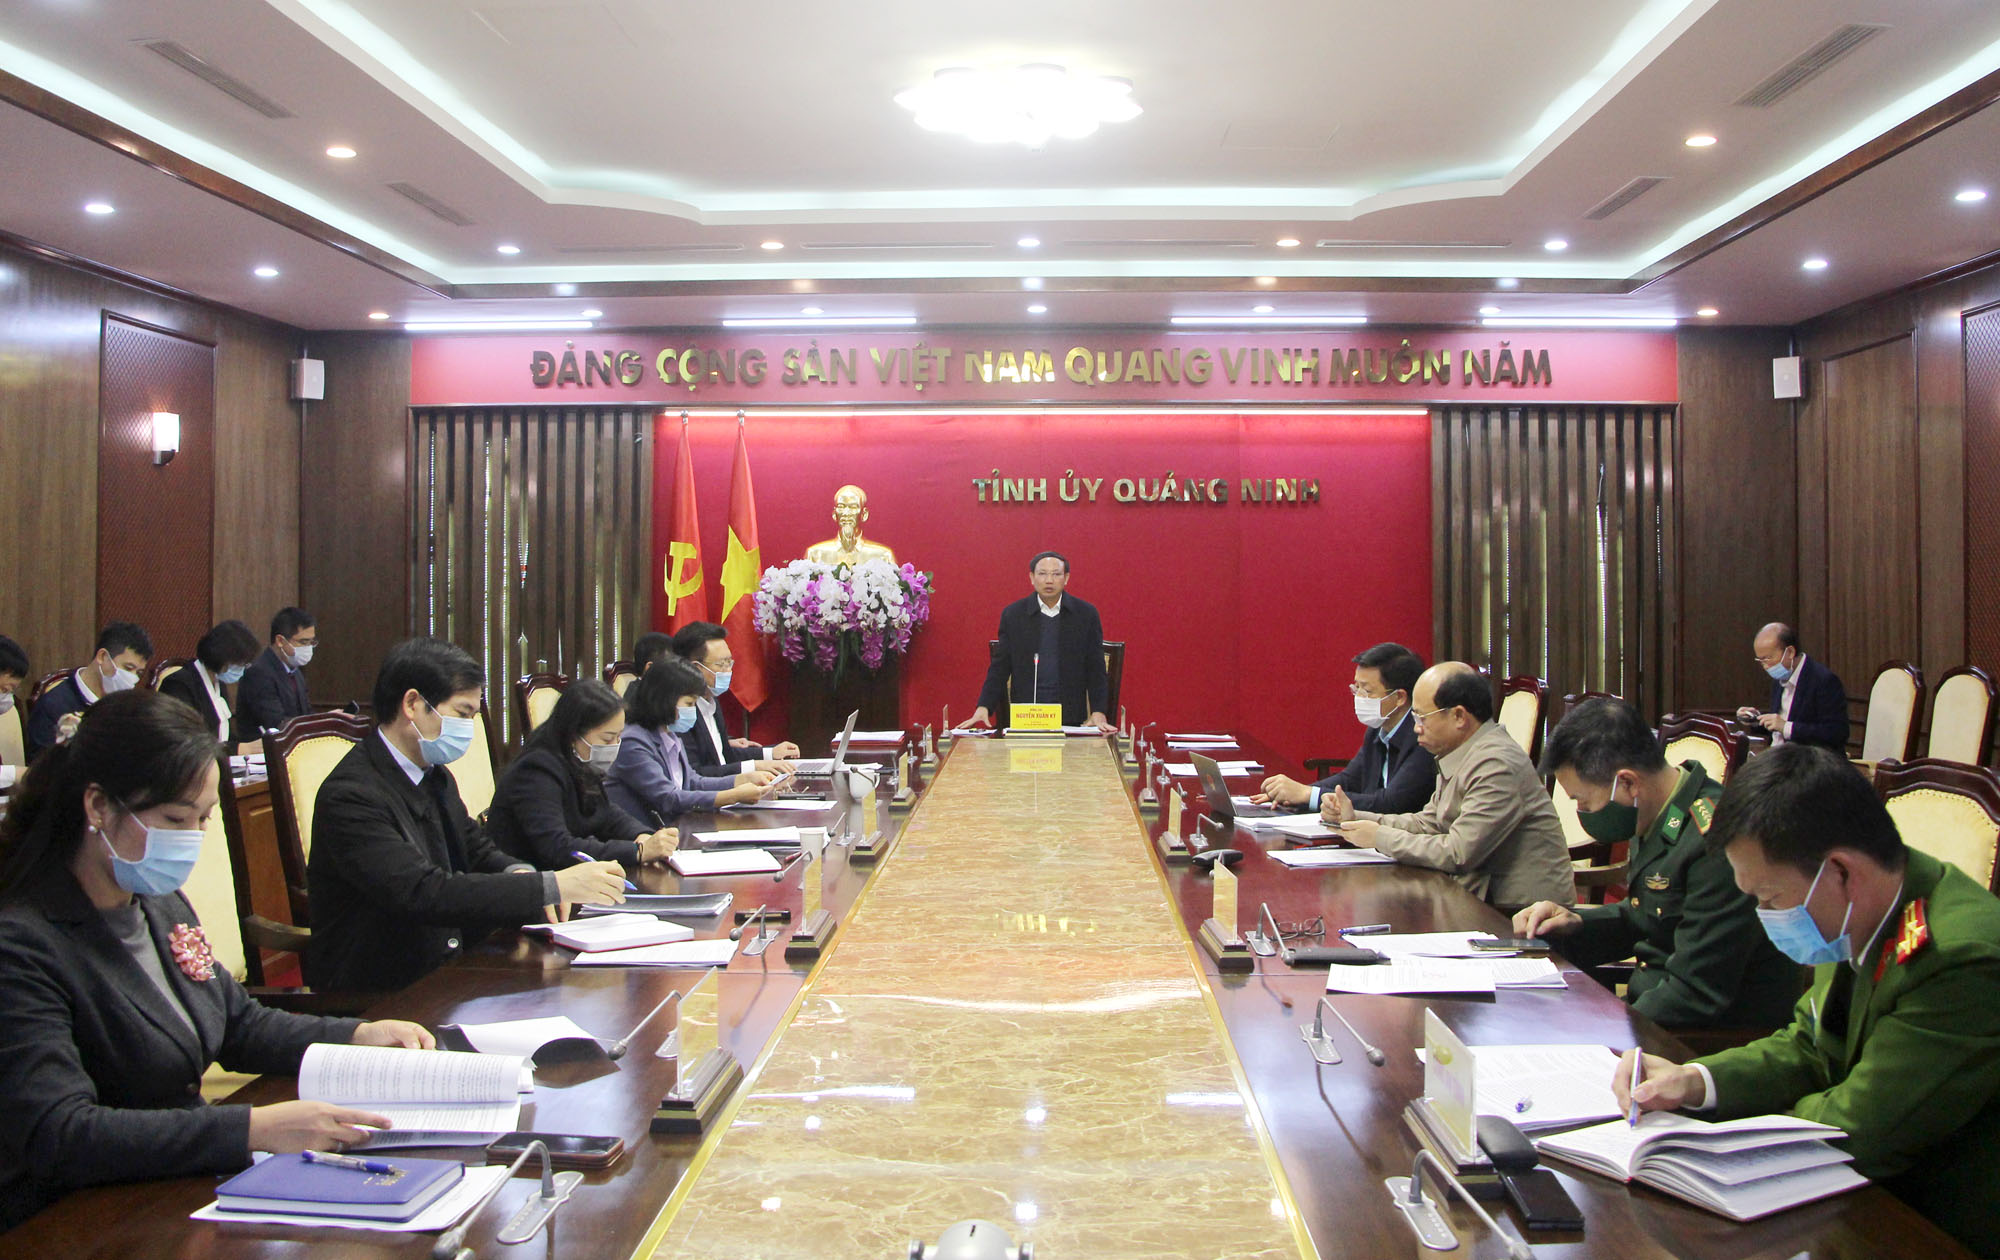 Đồng chí Nguyễn Xuân Ký, Bí thư Tỉnh ủy, Chủ tịch HĐND tỉnh kết luận cuộc họp.